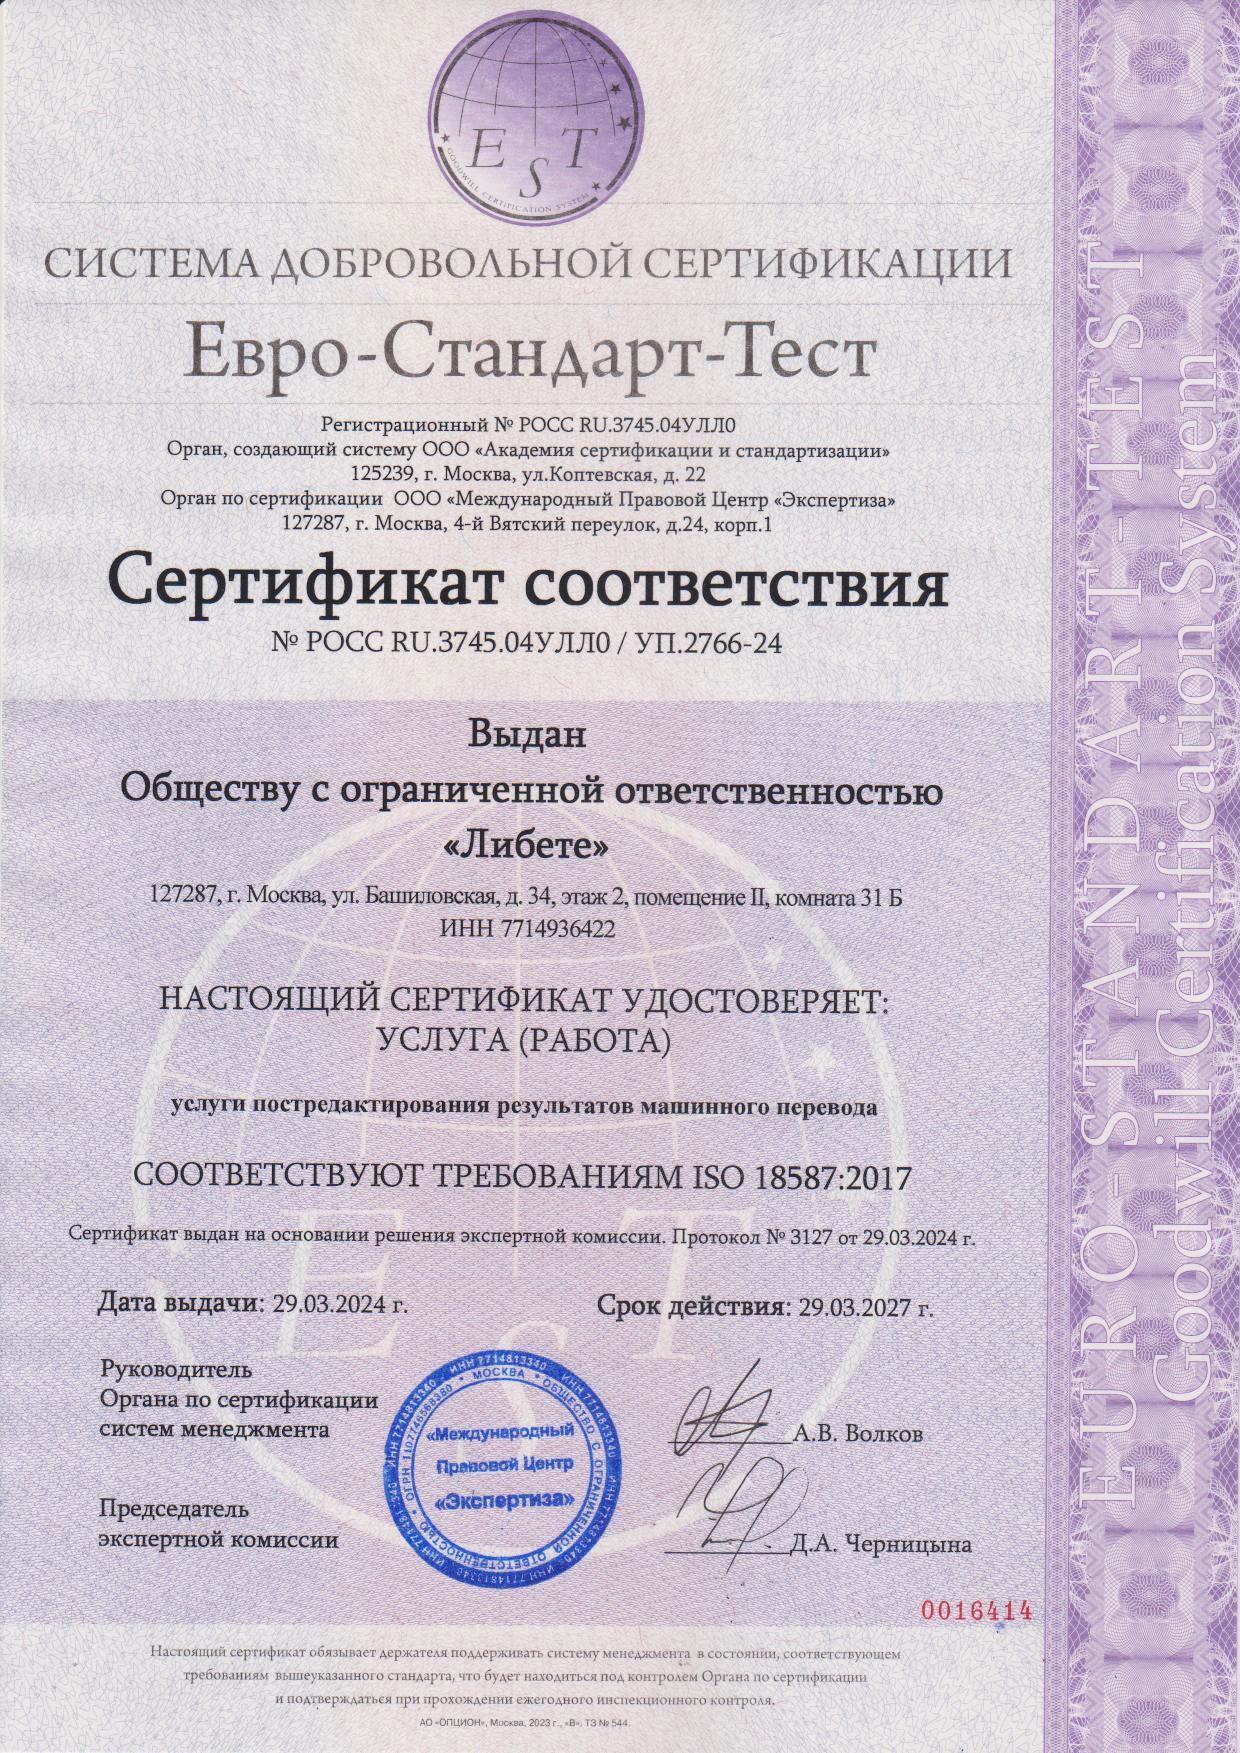 Сертификат соответстия требованиям ИСО 18587:2017 (ISO 18587:2017) «Услуги постредактирования результатов машинного перевода»